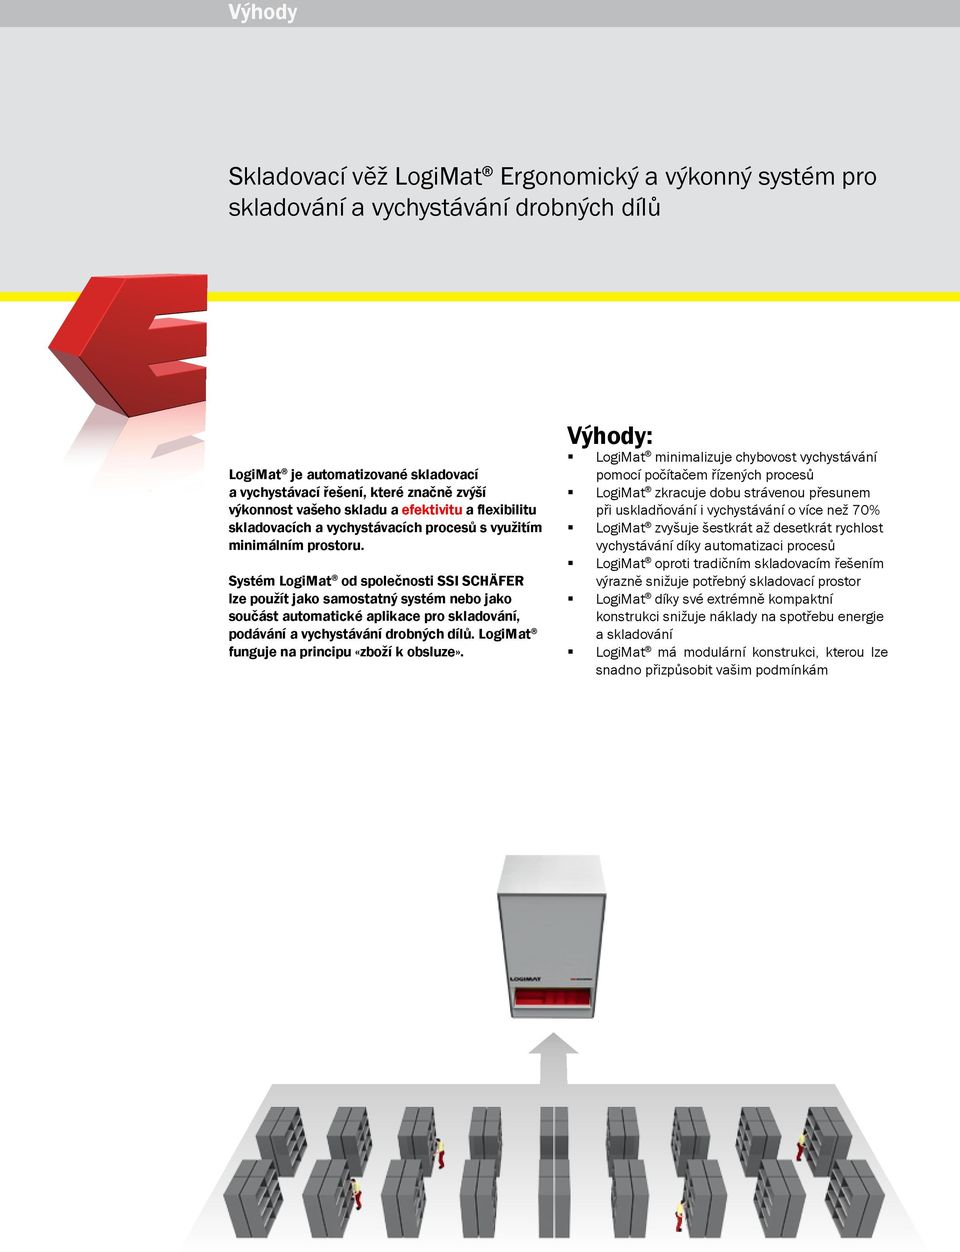 Systém LogiMat od společnosti SSI SCHÄFER lze použít jako samostatný systém nebo jako součást automatické aplikace pro skladování, podávání a vychystávání drobných dílů.